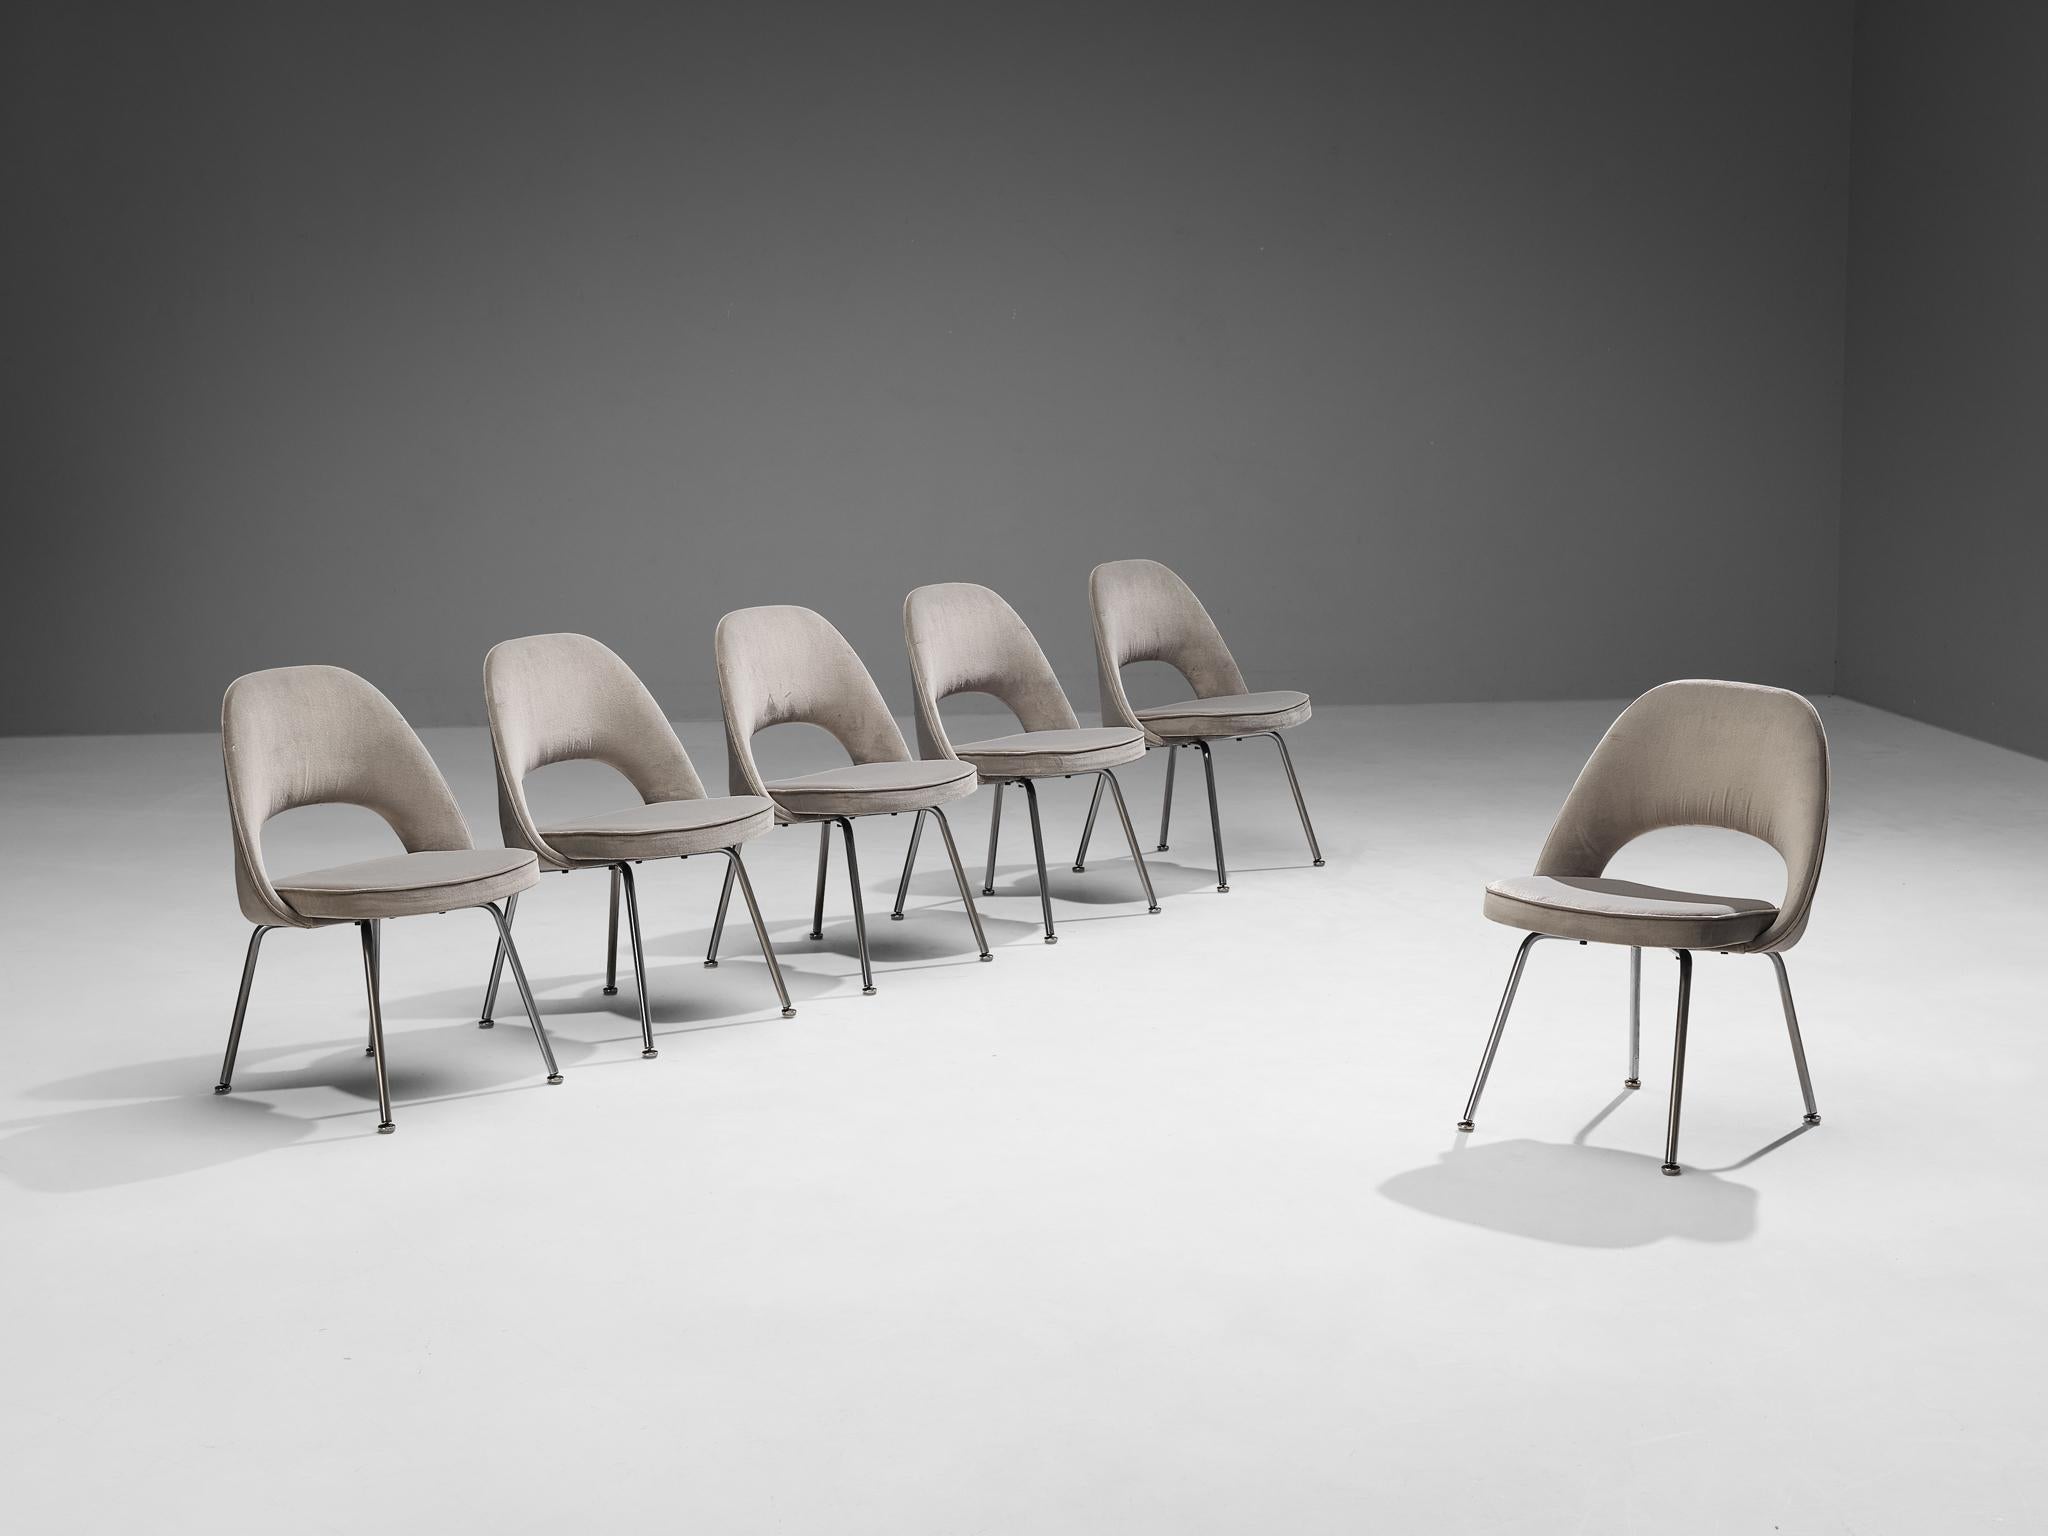 Eero Saarinen für Knoll International, Satz von sechs Esszimmerstühlen, Modell 72, verchromter Stahl, Samt, Vereinigte Staaten, Entwurf 1948, spätere Produktion

Satz von sechs organisch geformten Stühlen, entworfen von Eero Saarinen. Eine